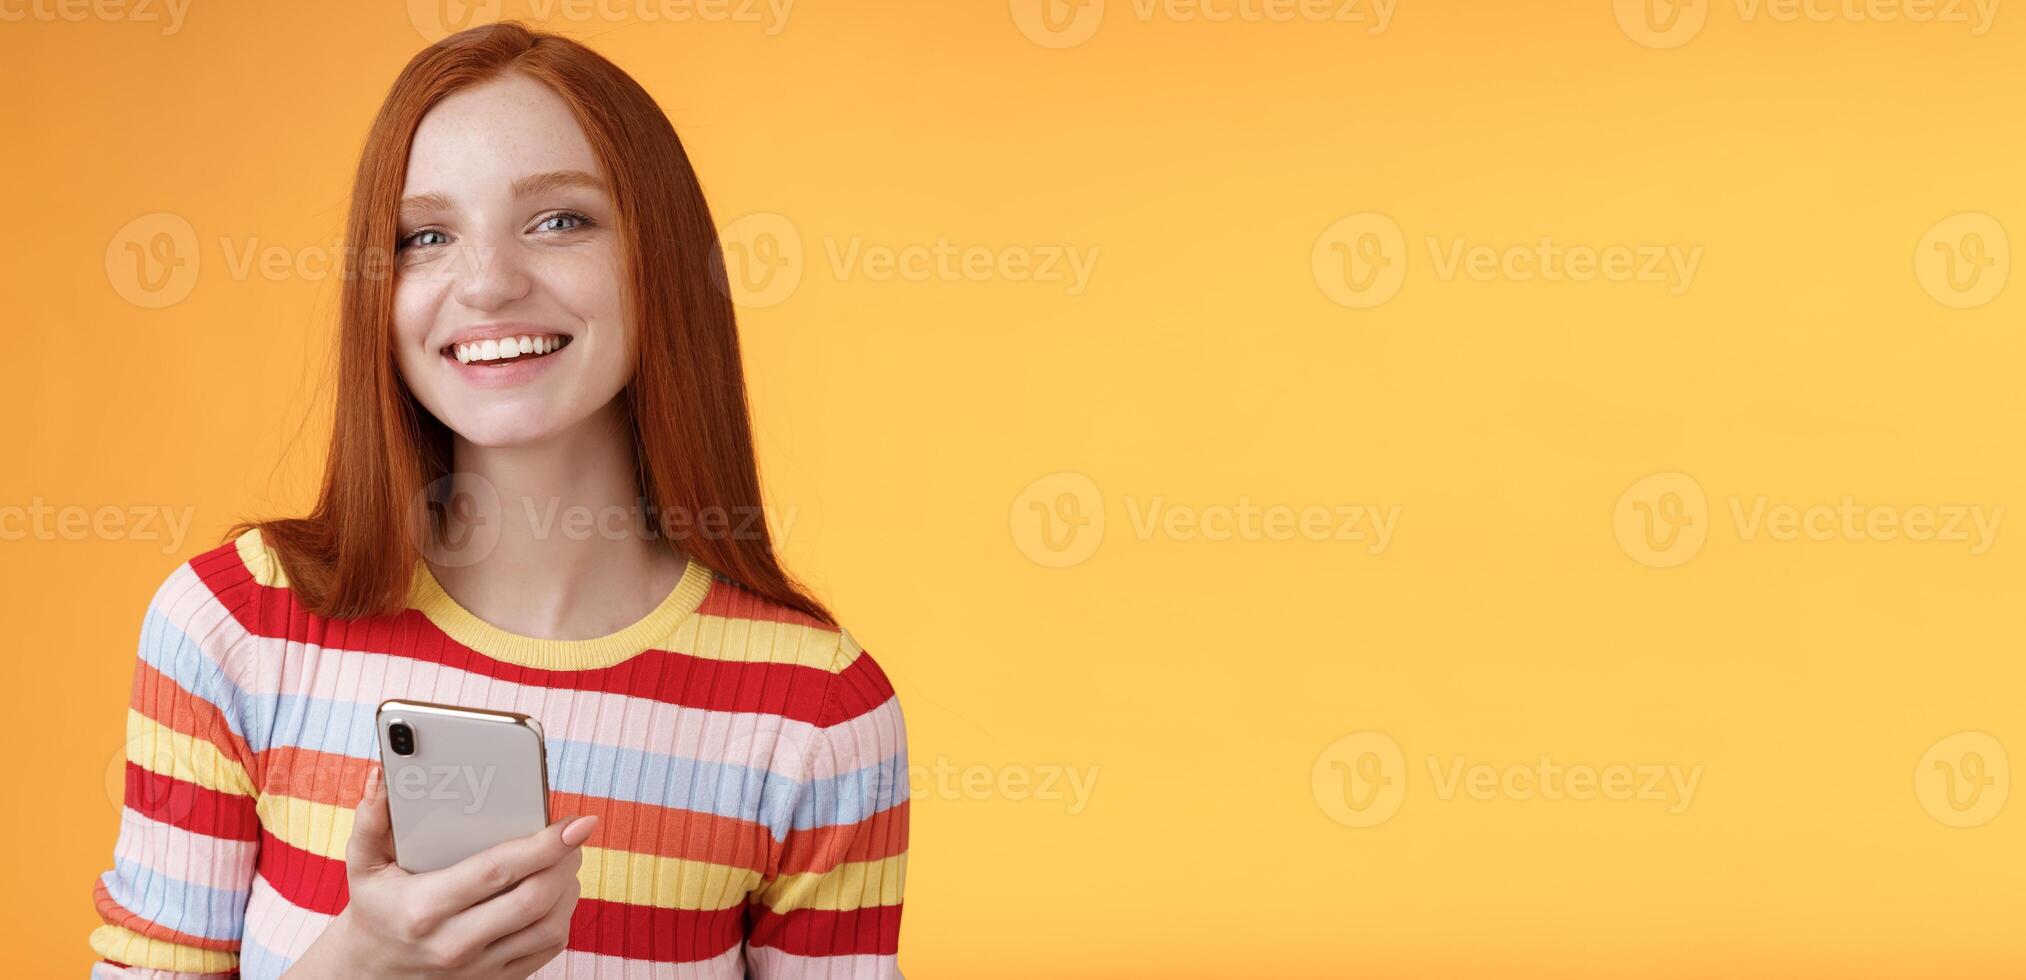 simpático entusiasta joven pelirrojo niña azul ojos utilizando teléfono inteligente giro cámara responder sonriente en general narración quien expedido mensaje en pie Encantado naranja antecedentes mensajería, mensajes de texto novio foto